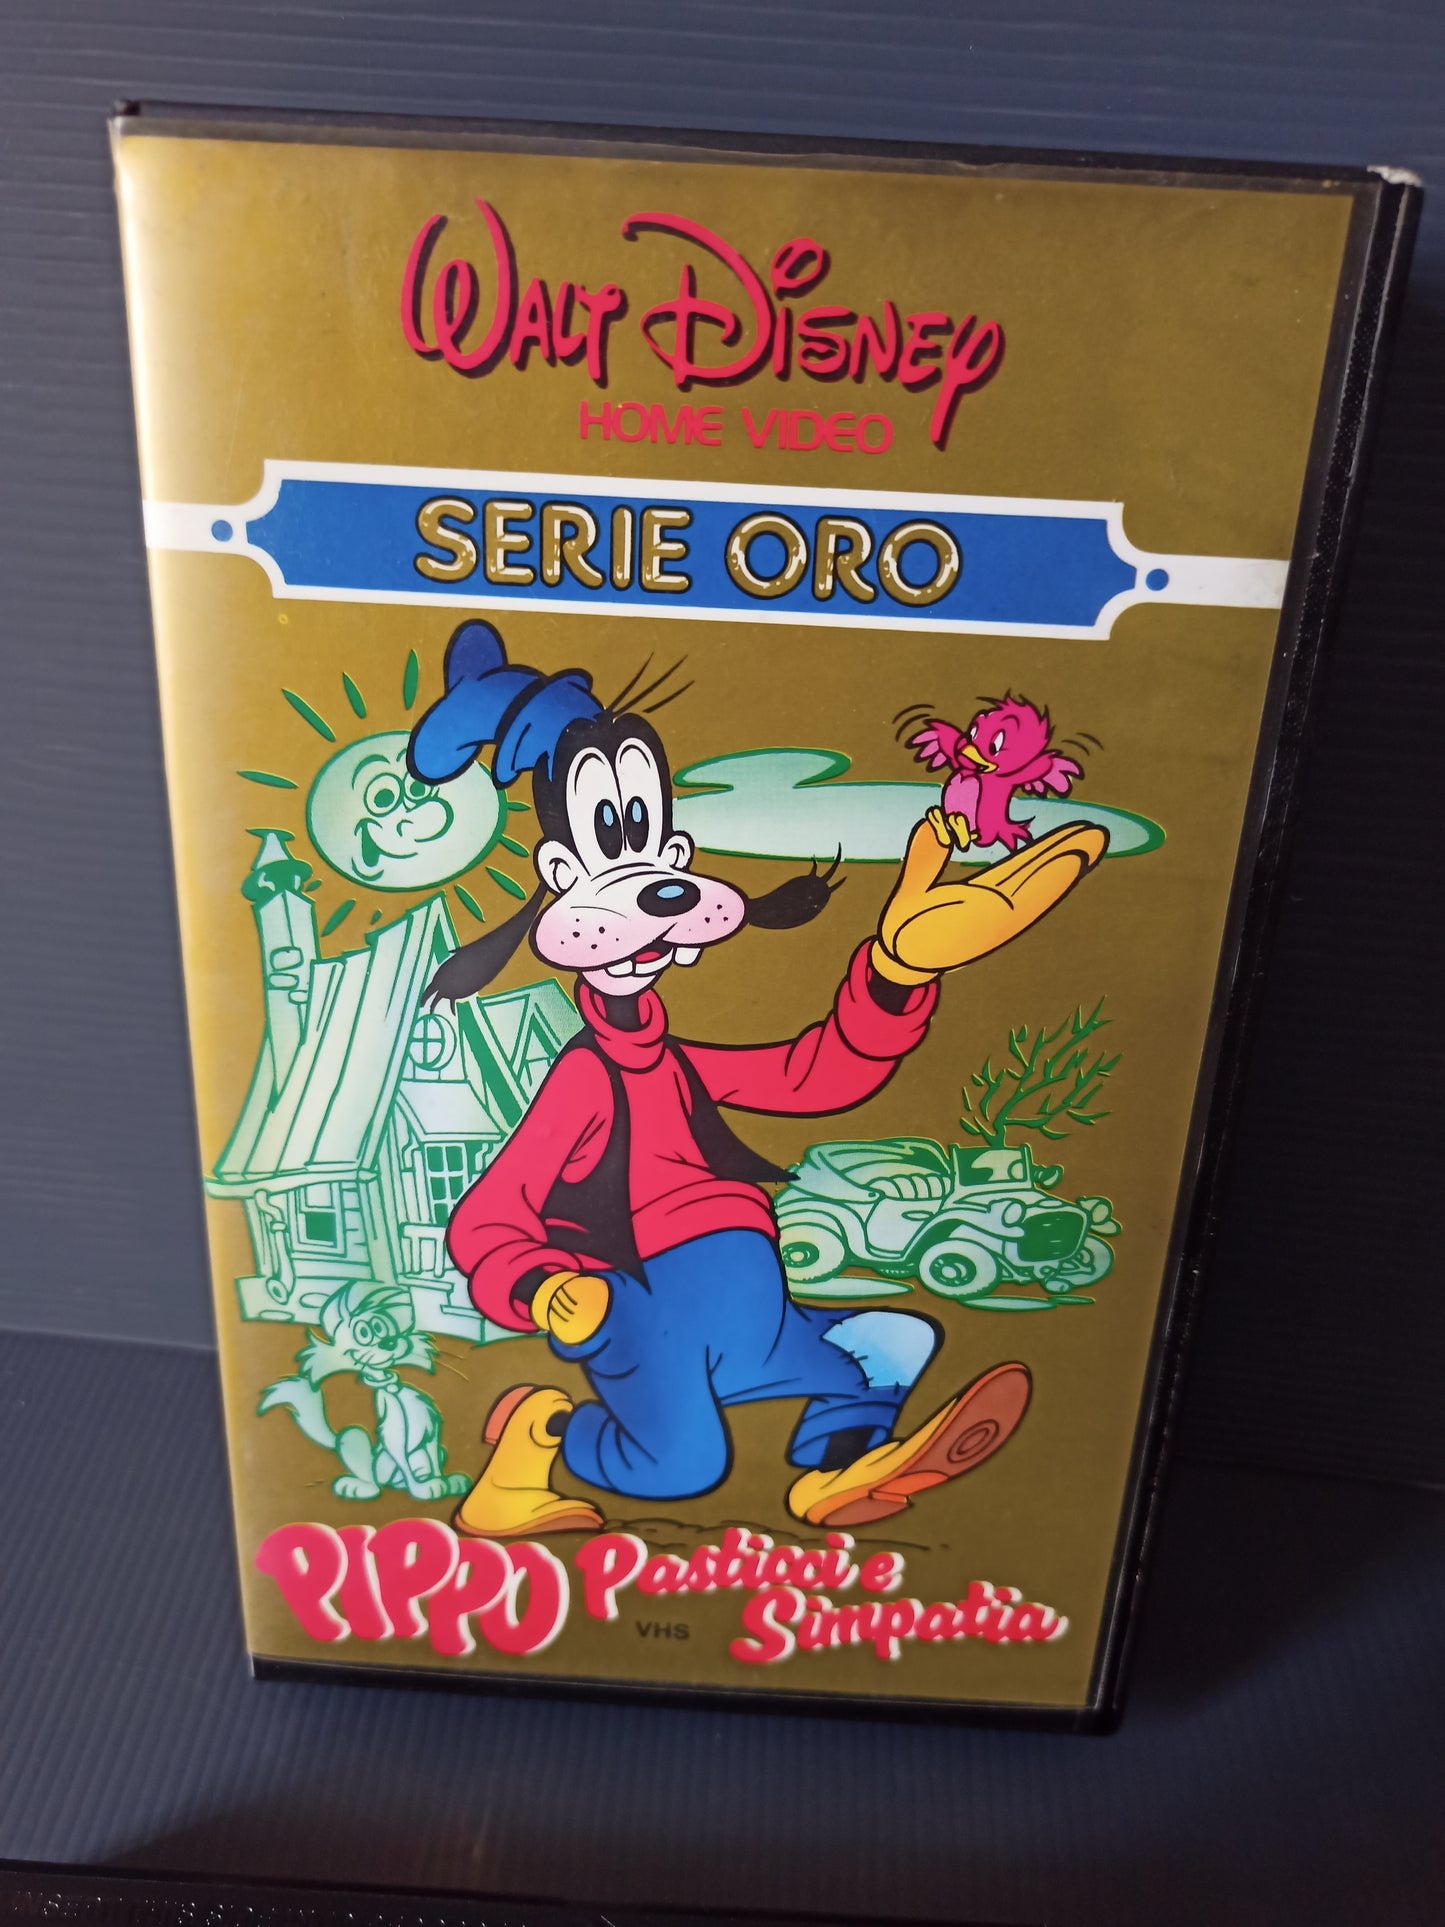 VHS Pippo Pasticci e simpatia Serie Oro, Walt Disney originale 1987